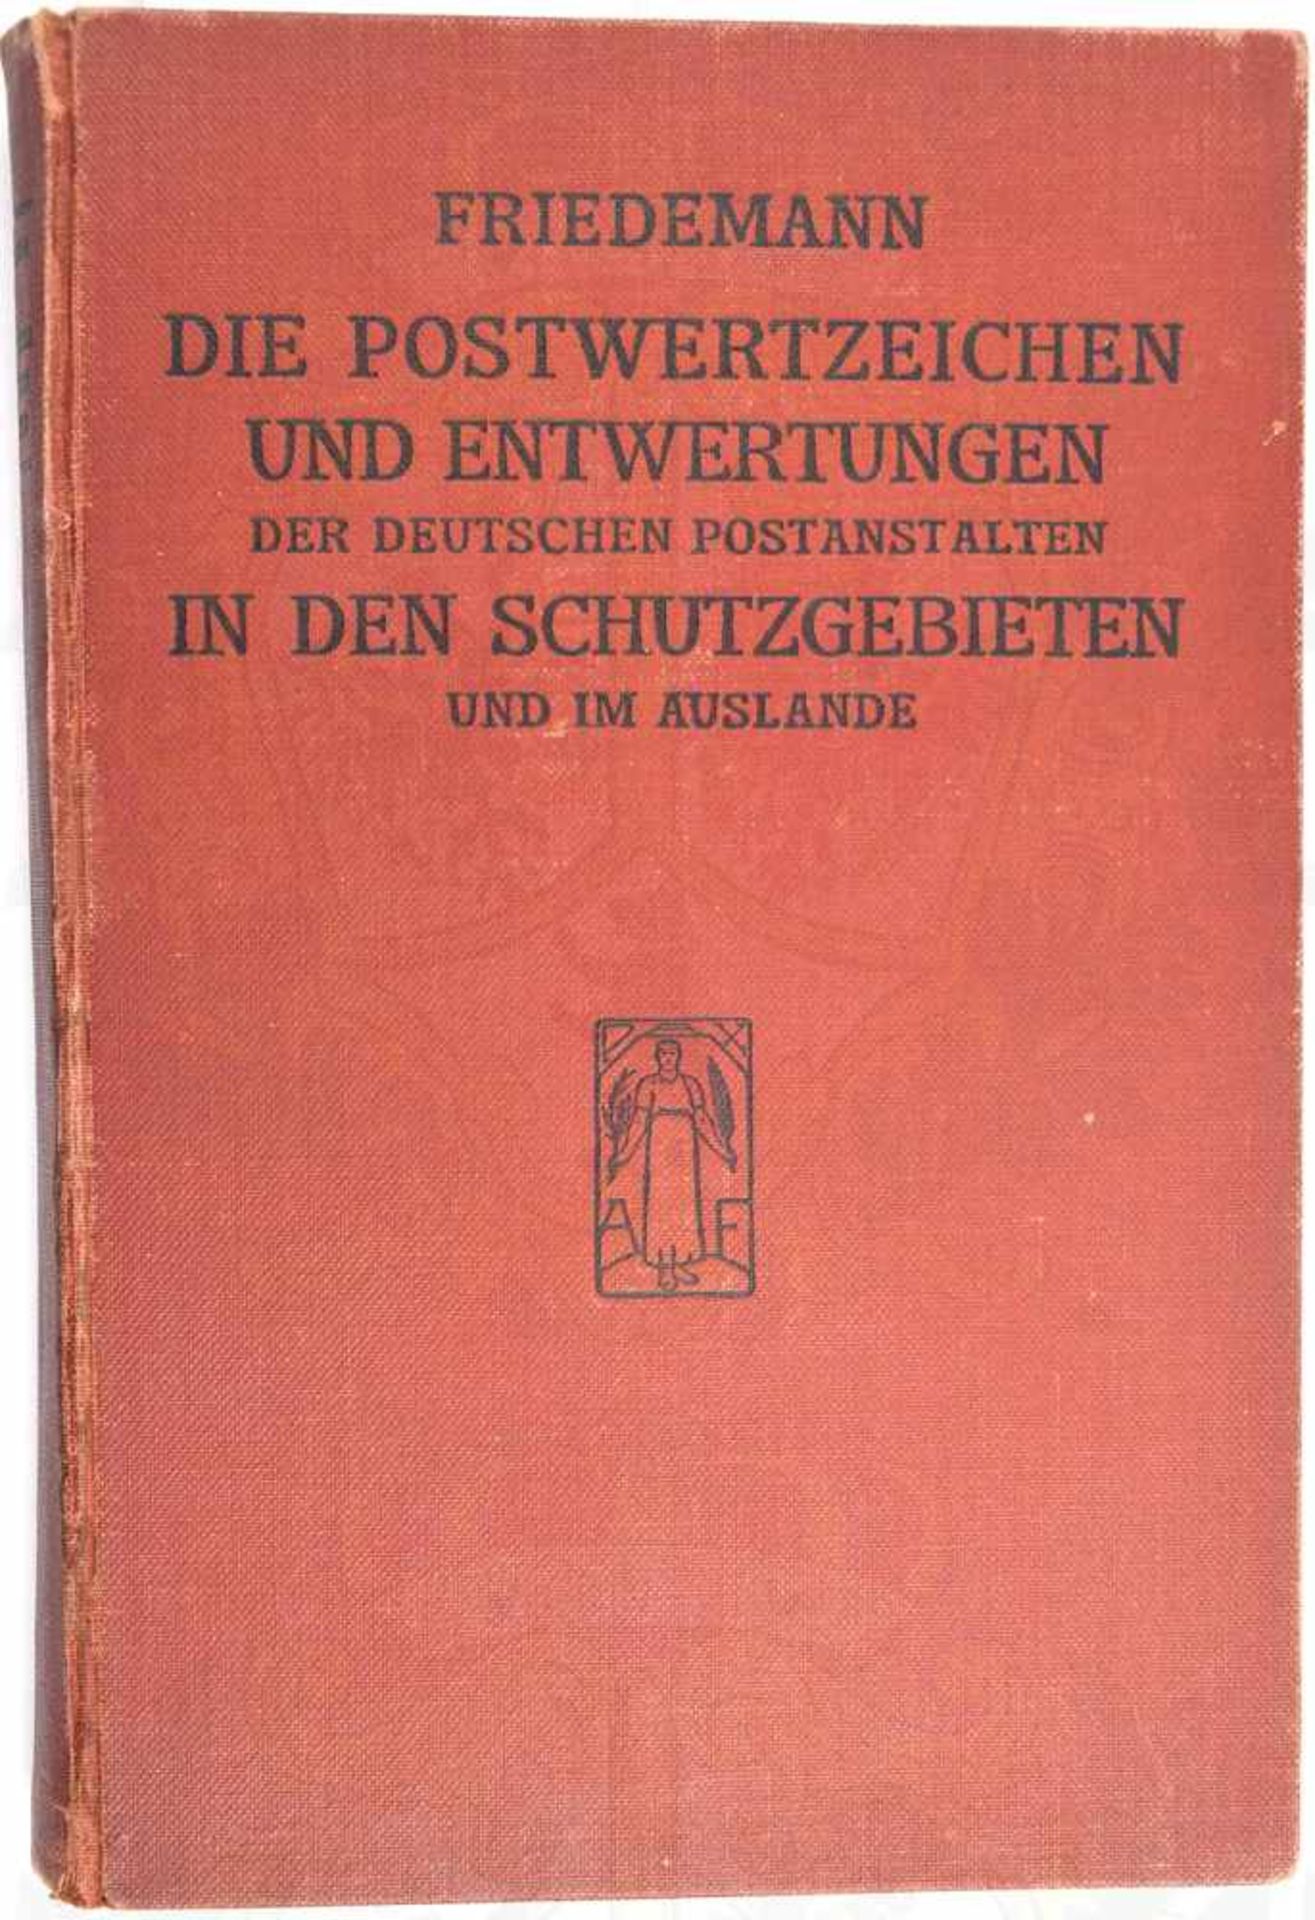 POSTWERTZEICHEN IN DEN SCHUTZGEBIETEN UND IM AUSLANDE, A. Friedemann, Leipzig 1921, 451 S., zahll.